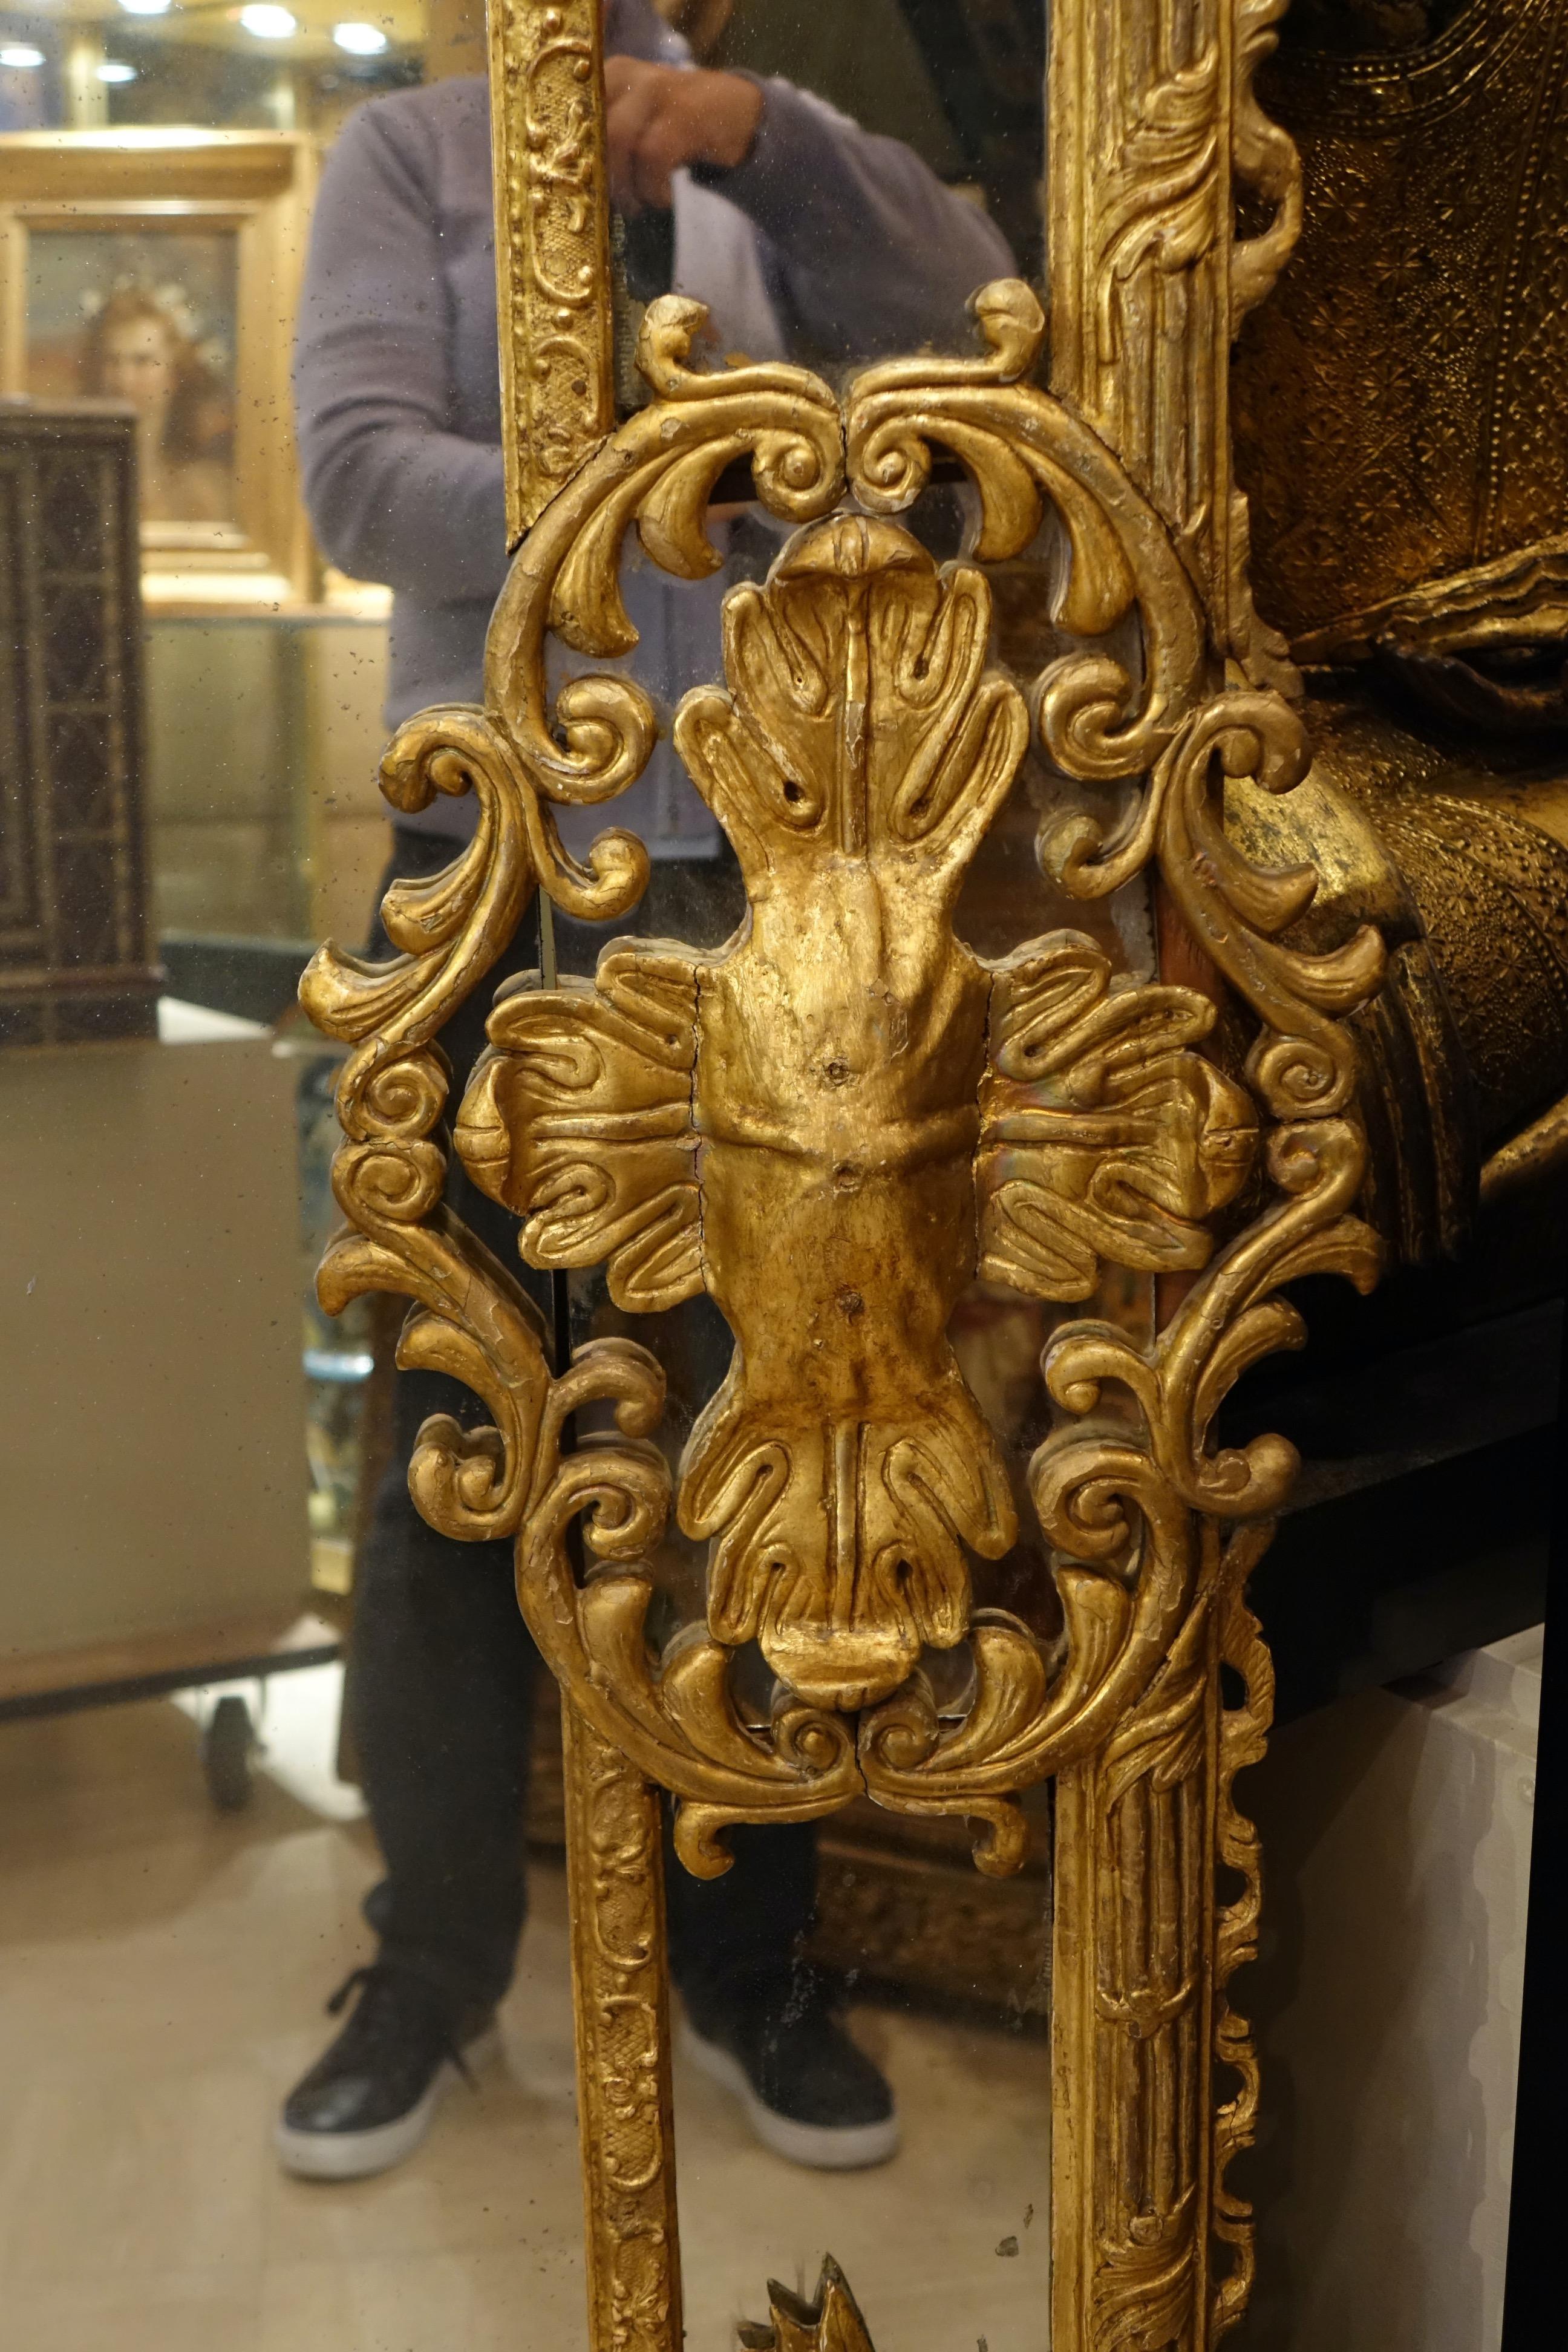 Grand miroir en bois sculpté et doré, décoré de rinceaux, de feuilles d'acanthe, de colonnes cannelées et de deux grands motifs en forme de croix sur chaque face. L'ensemble repose sur des pieds griffus. Verre de mercure et pare-closes. Parquet à